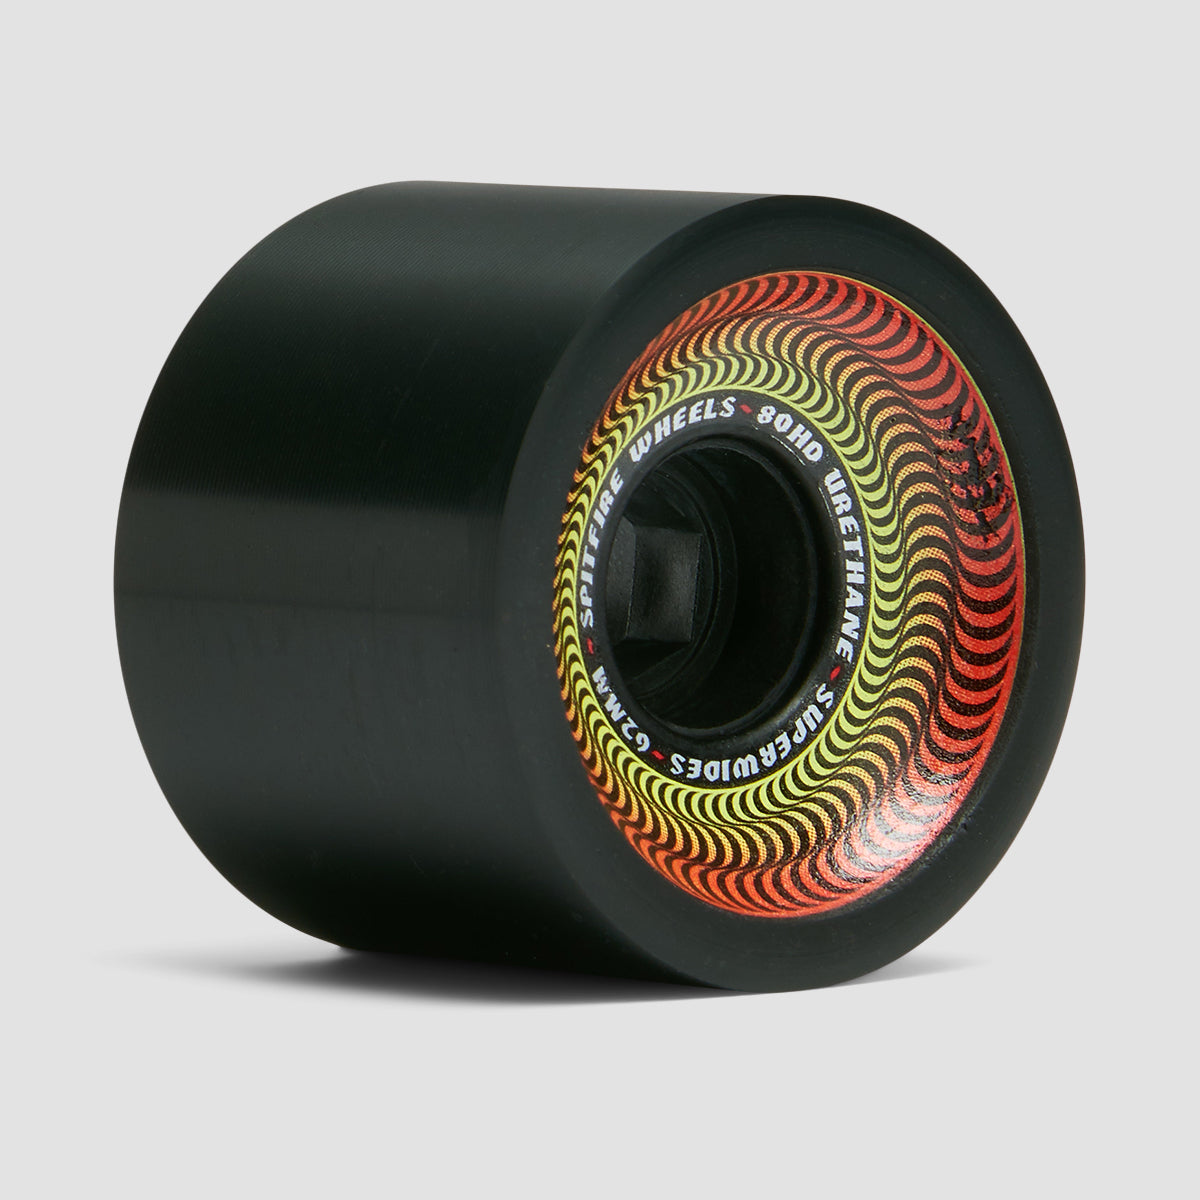 Spitfire Superwides 80HD Skateboard Wheels Black 62mm